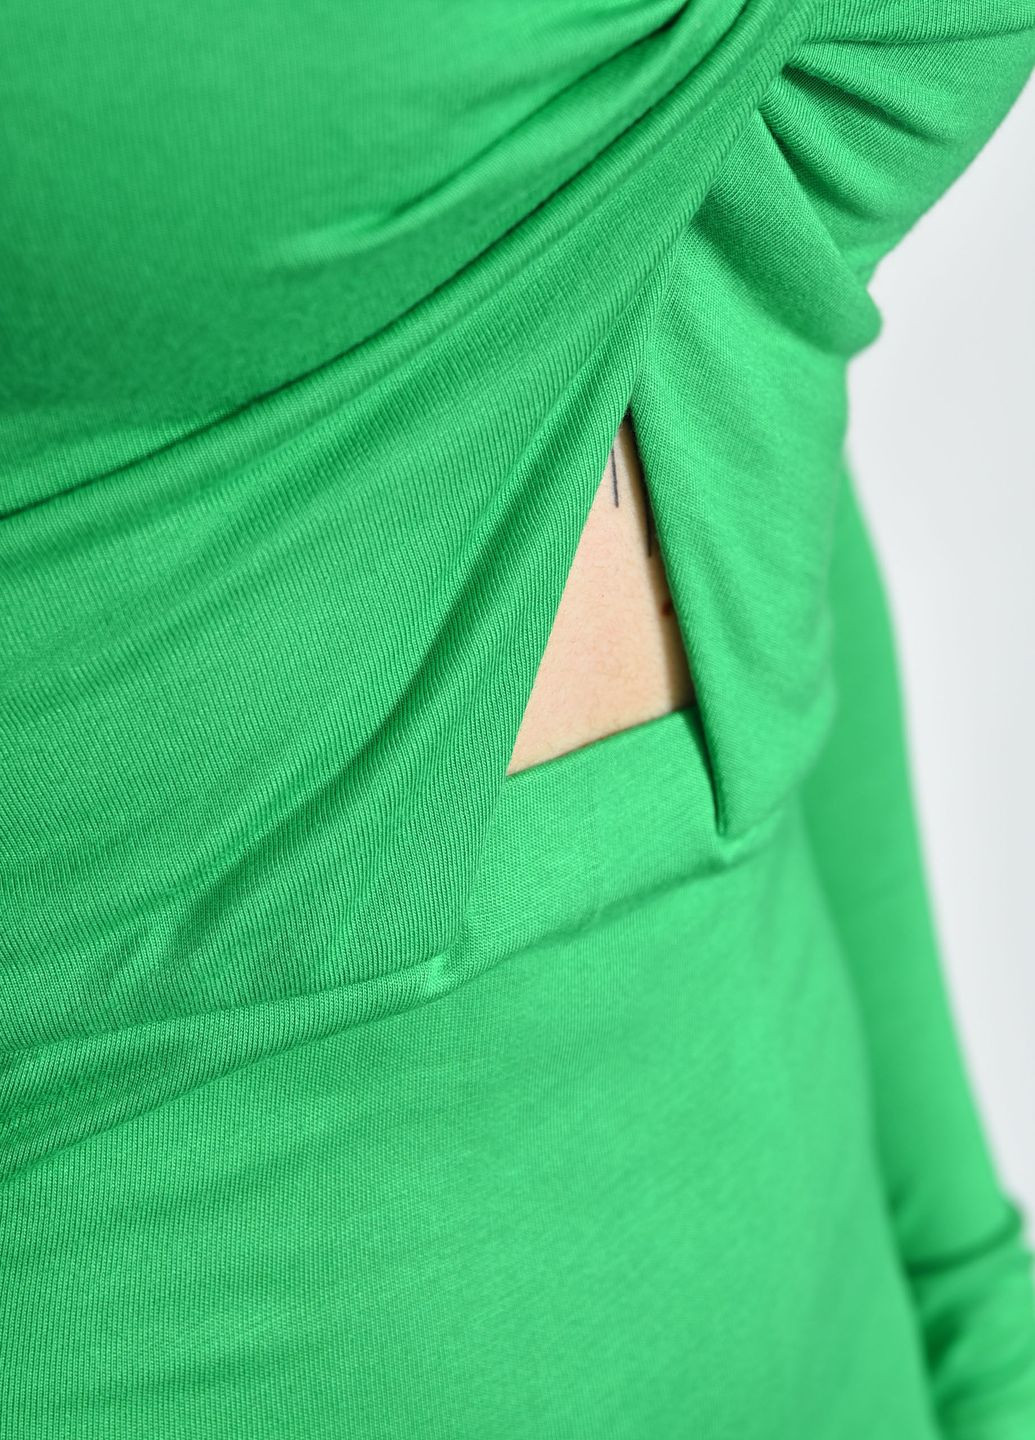 Зеленое джинсовое платье женское однотонное зеленого цвета платье-водолазка Let's Shop однотонное